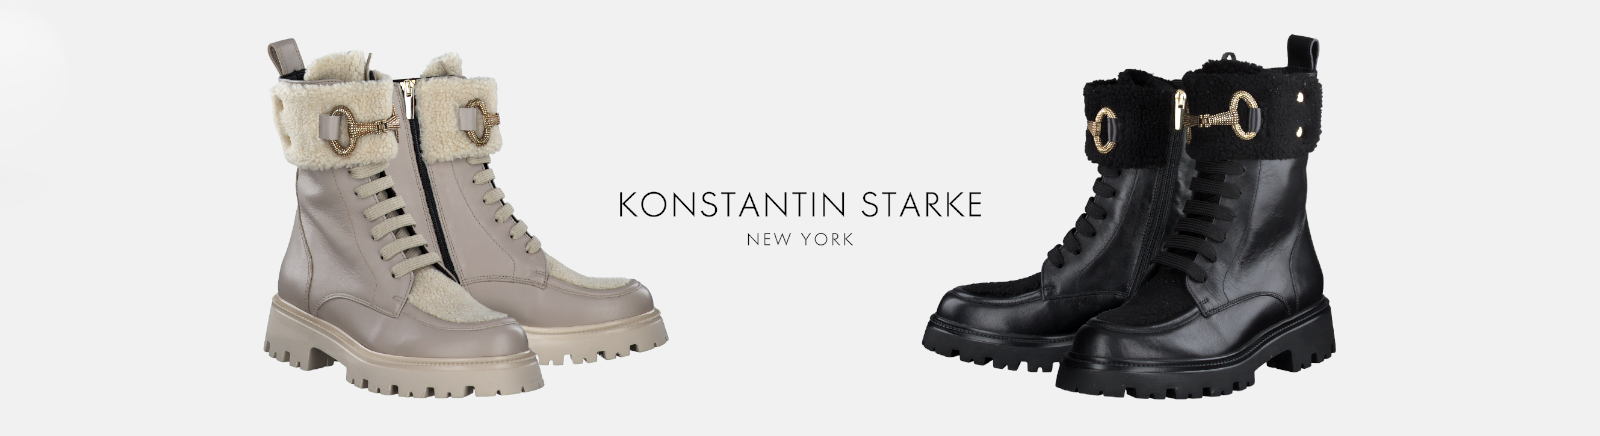 Juppen: Konstantin Starke Plateau-Stiefeletten für Damen online shoppen